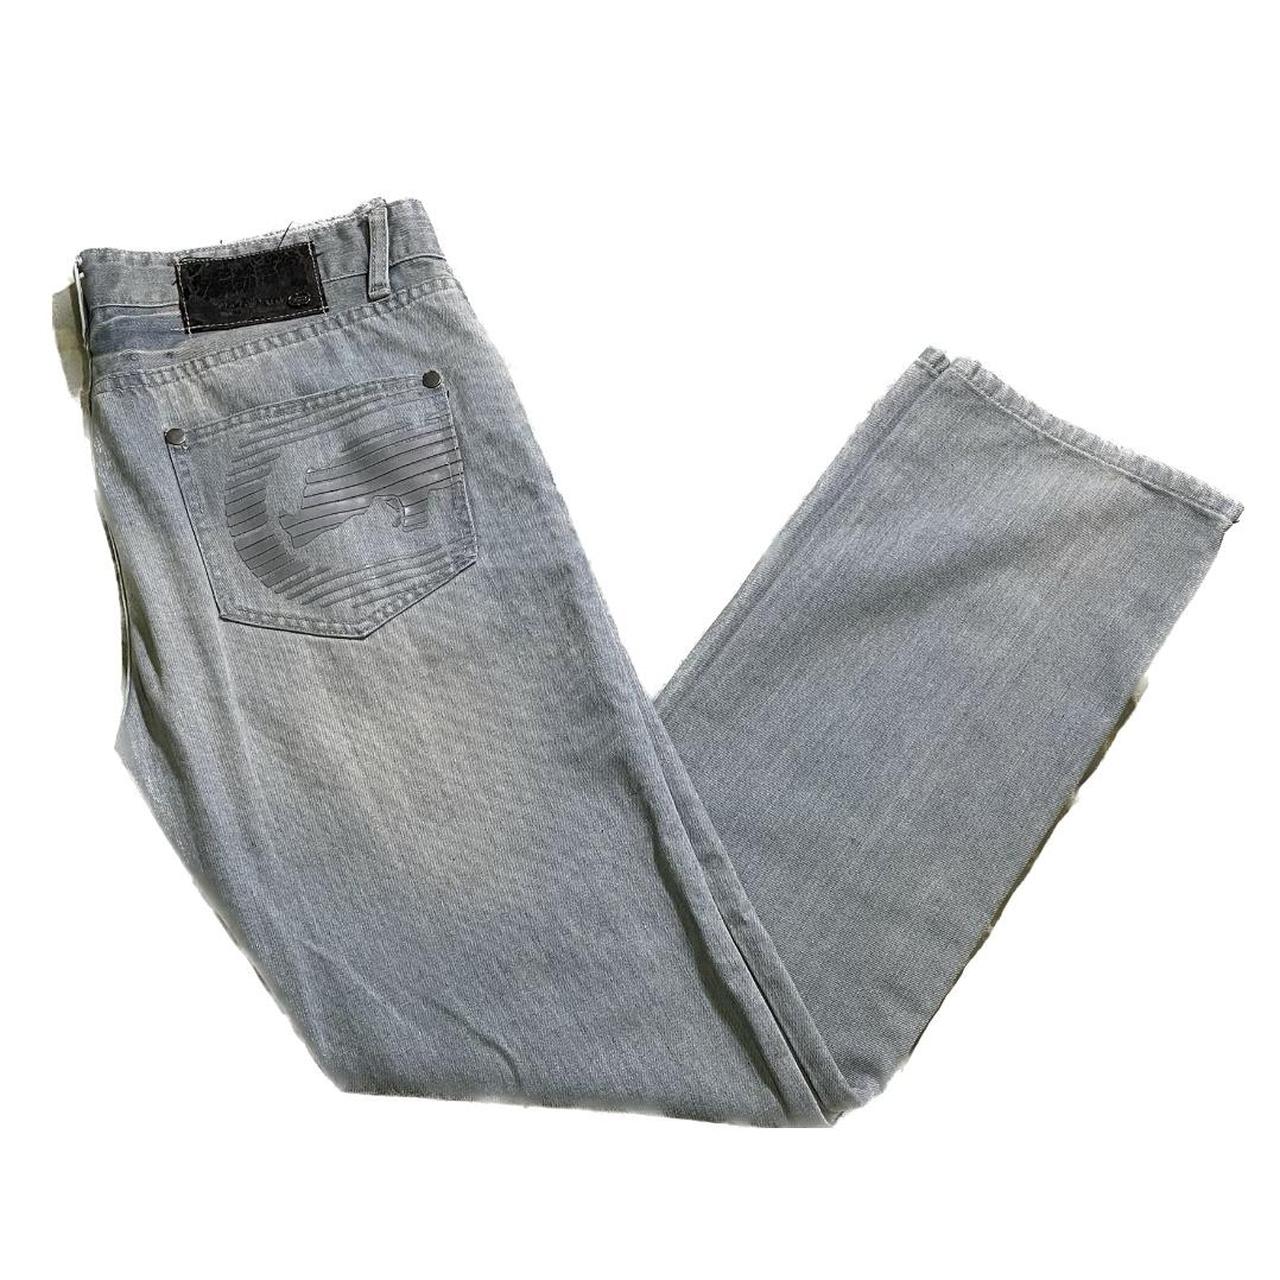 Ecko UNLTD jeans -back design -stacked denim... - Depop